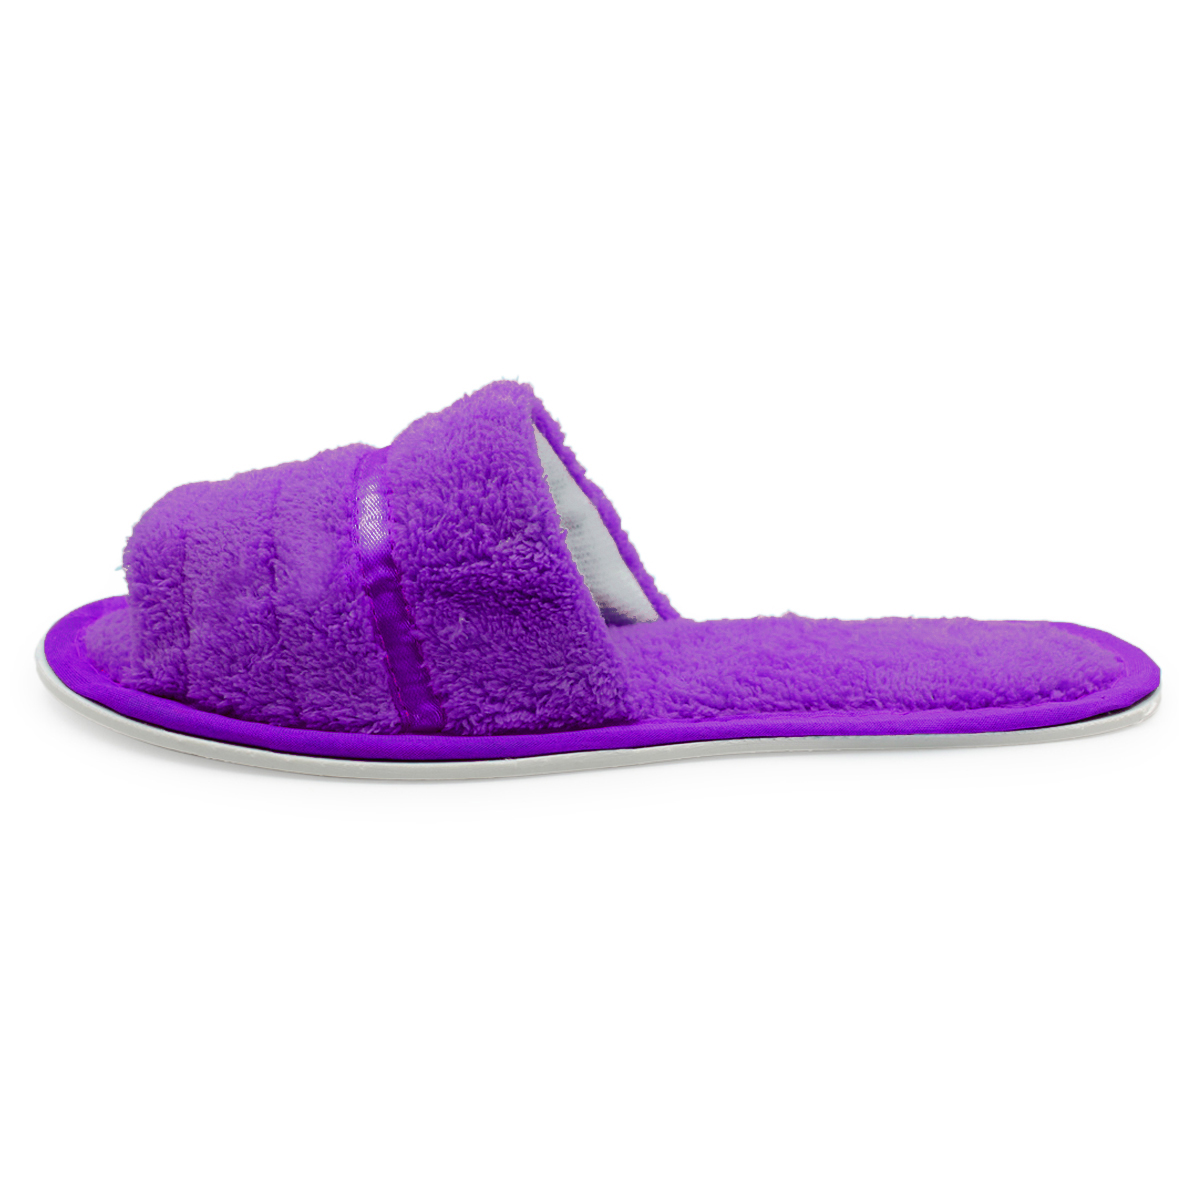 Women's Terry Slippers Open Toe House Shoes Slip On Slides | eBay